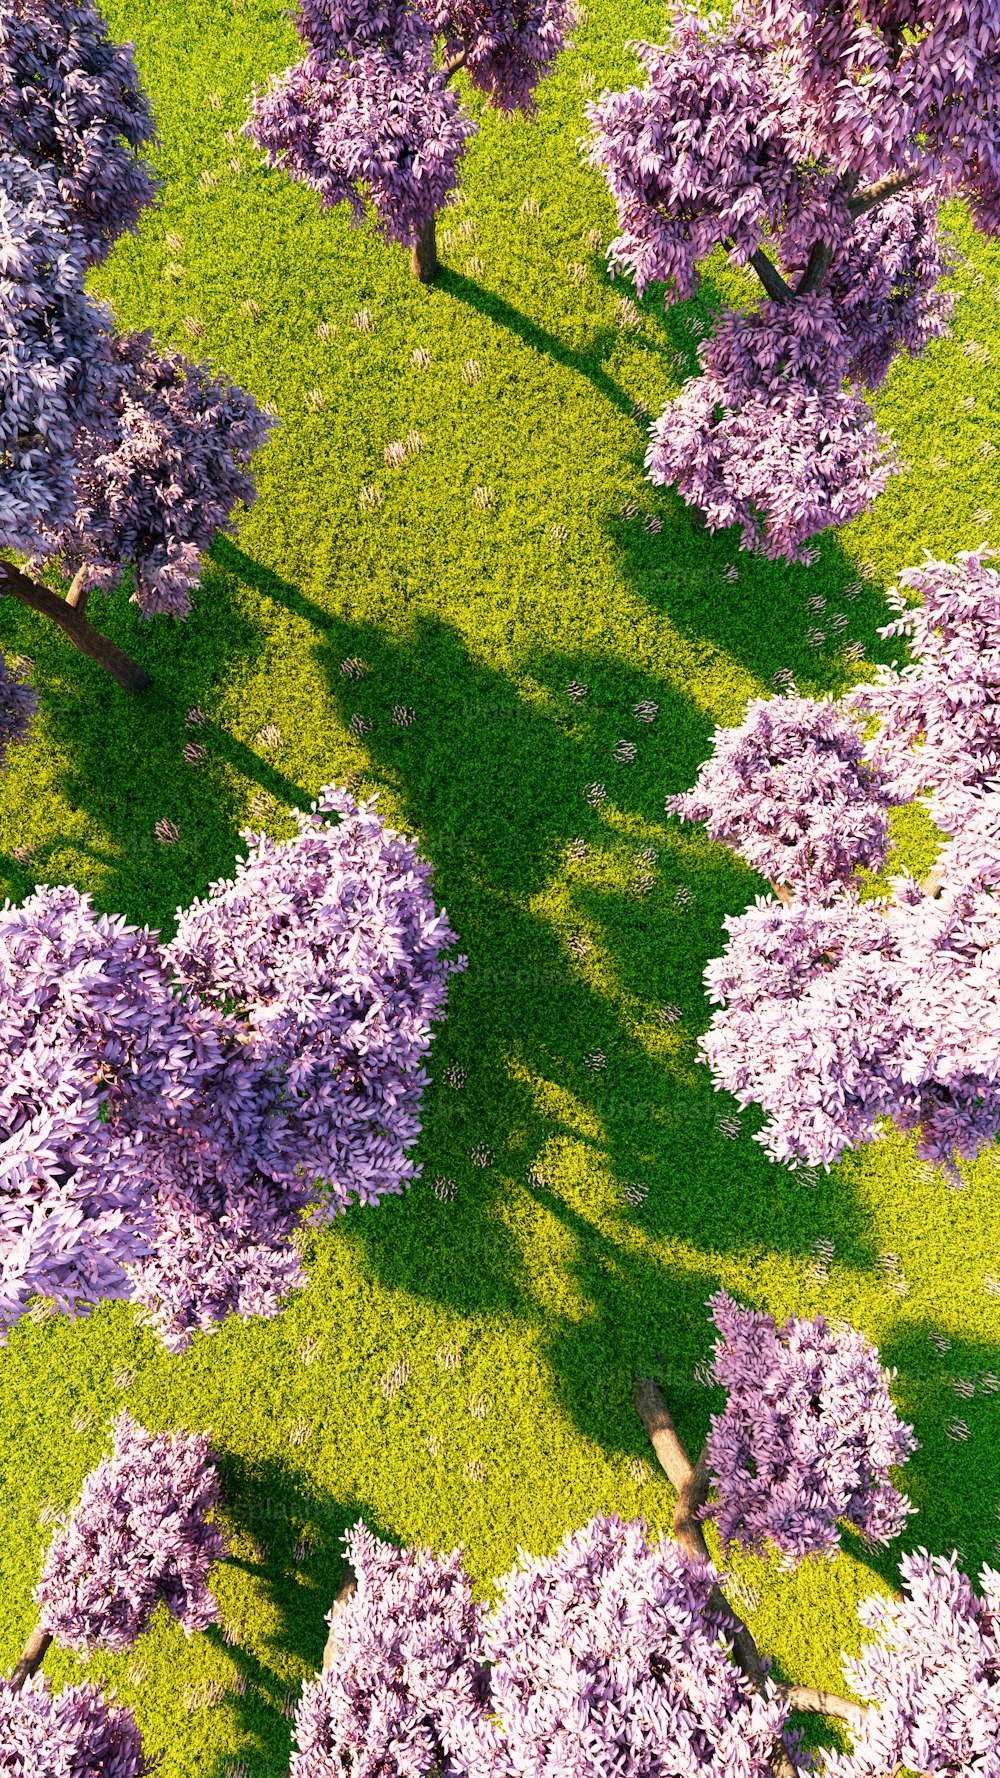 una veduta aerea di un campo con alberi in fiore